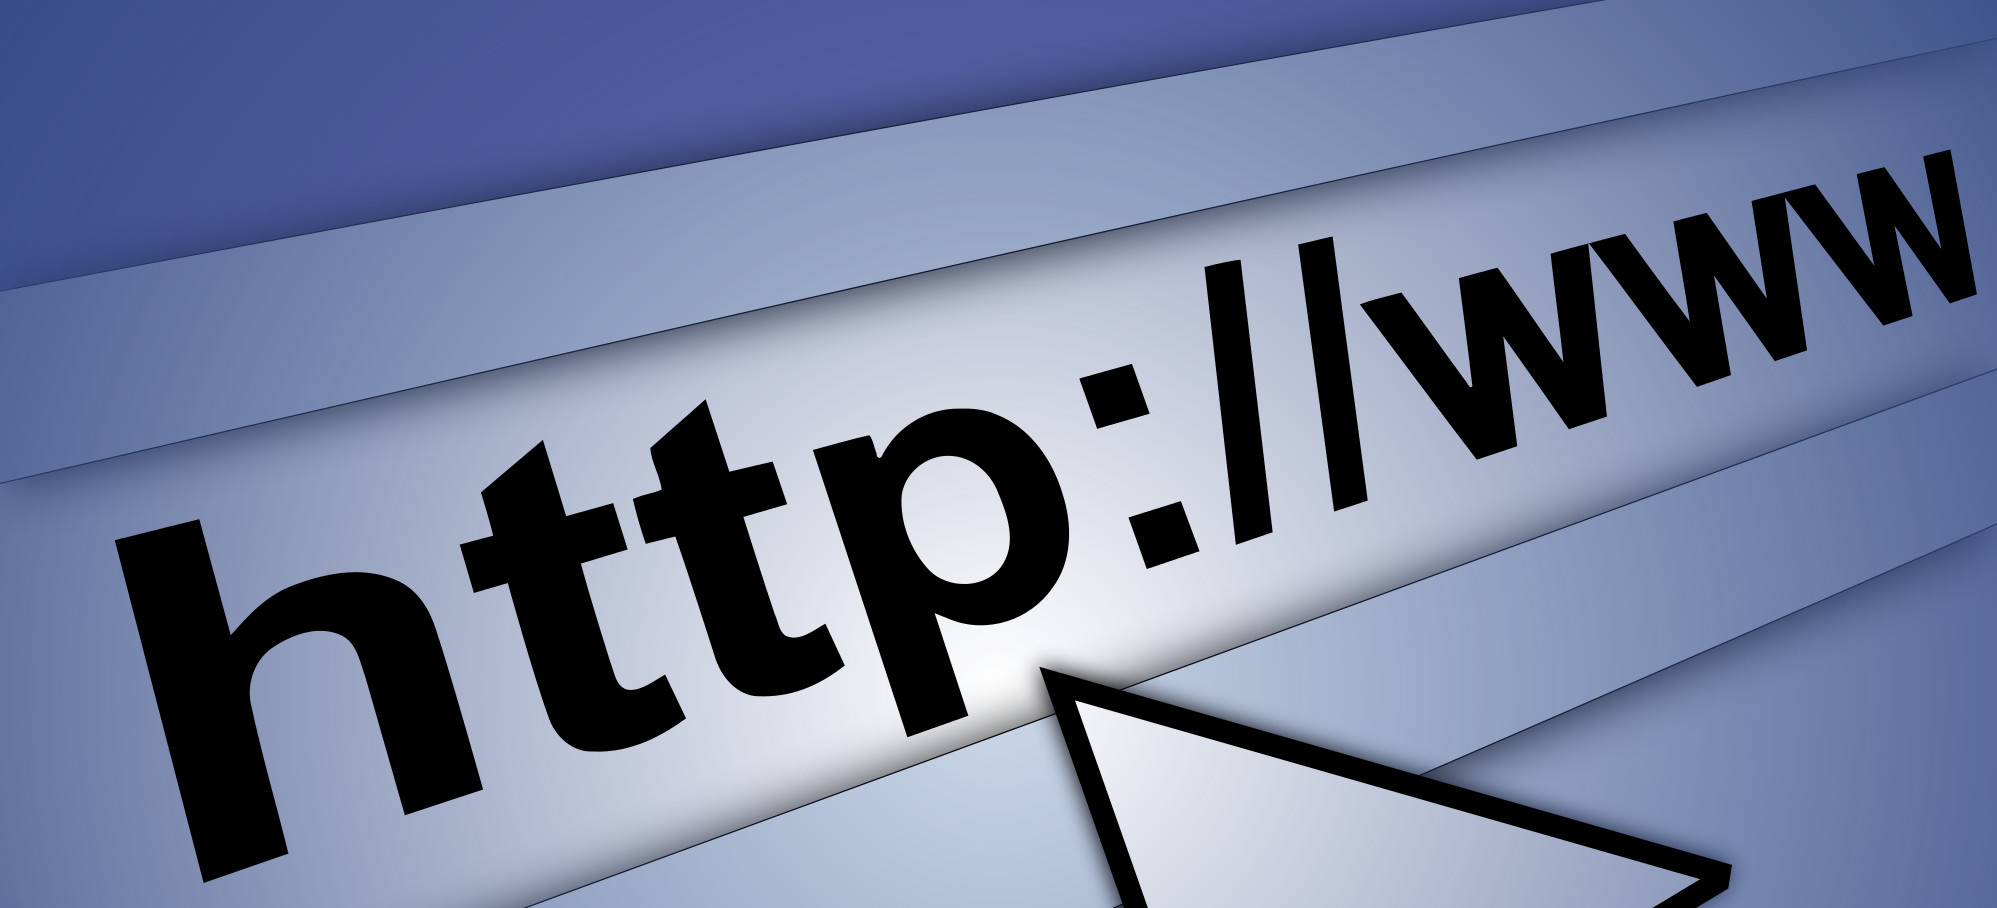 Usare gli URL di dati nel modo corretto in HTML5 e CSS